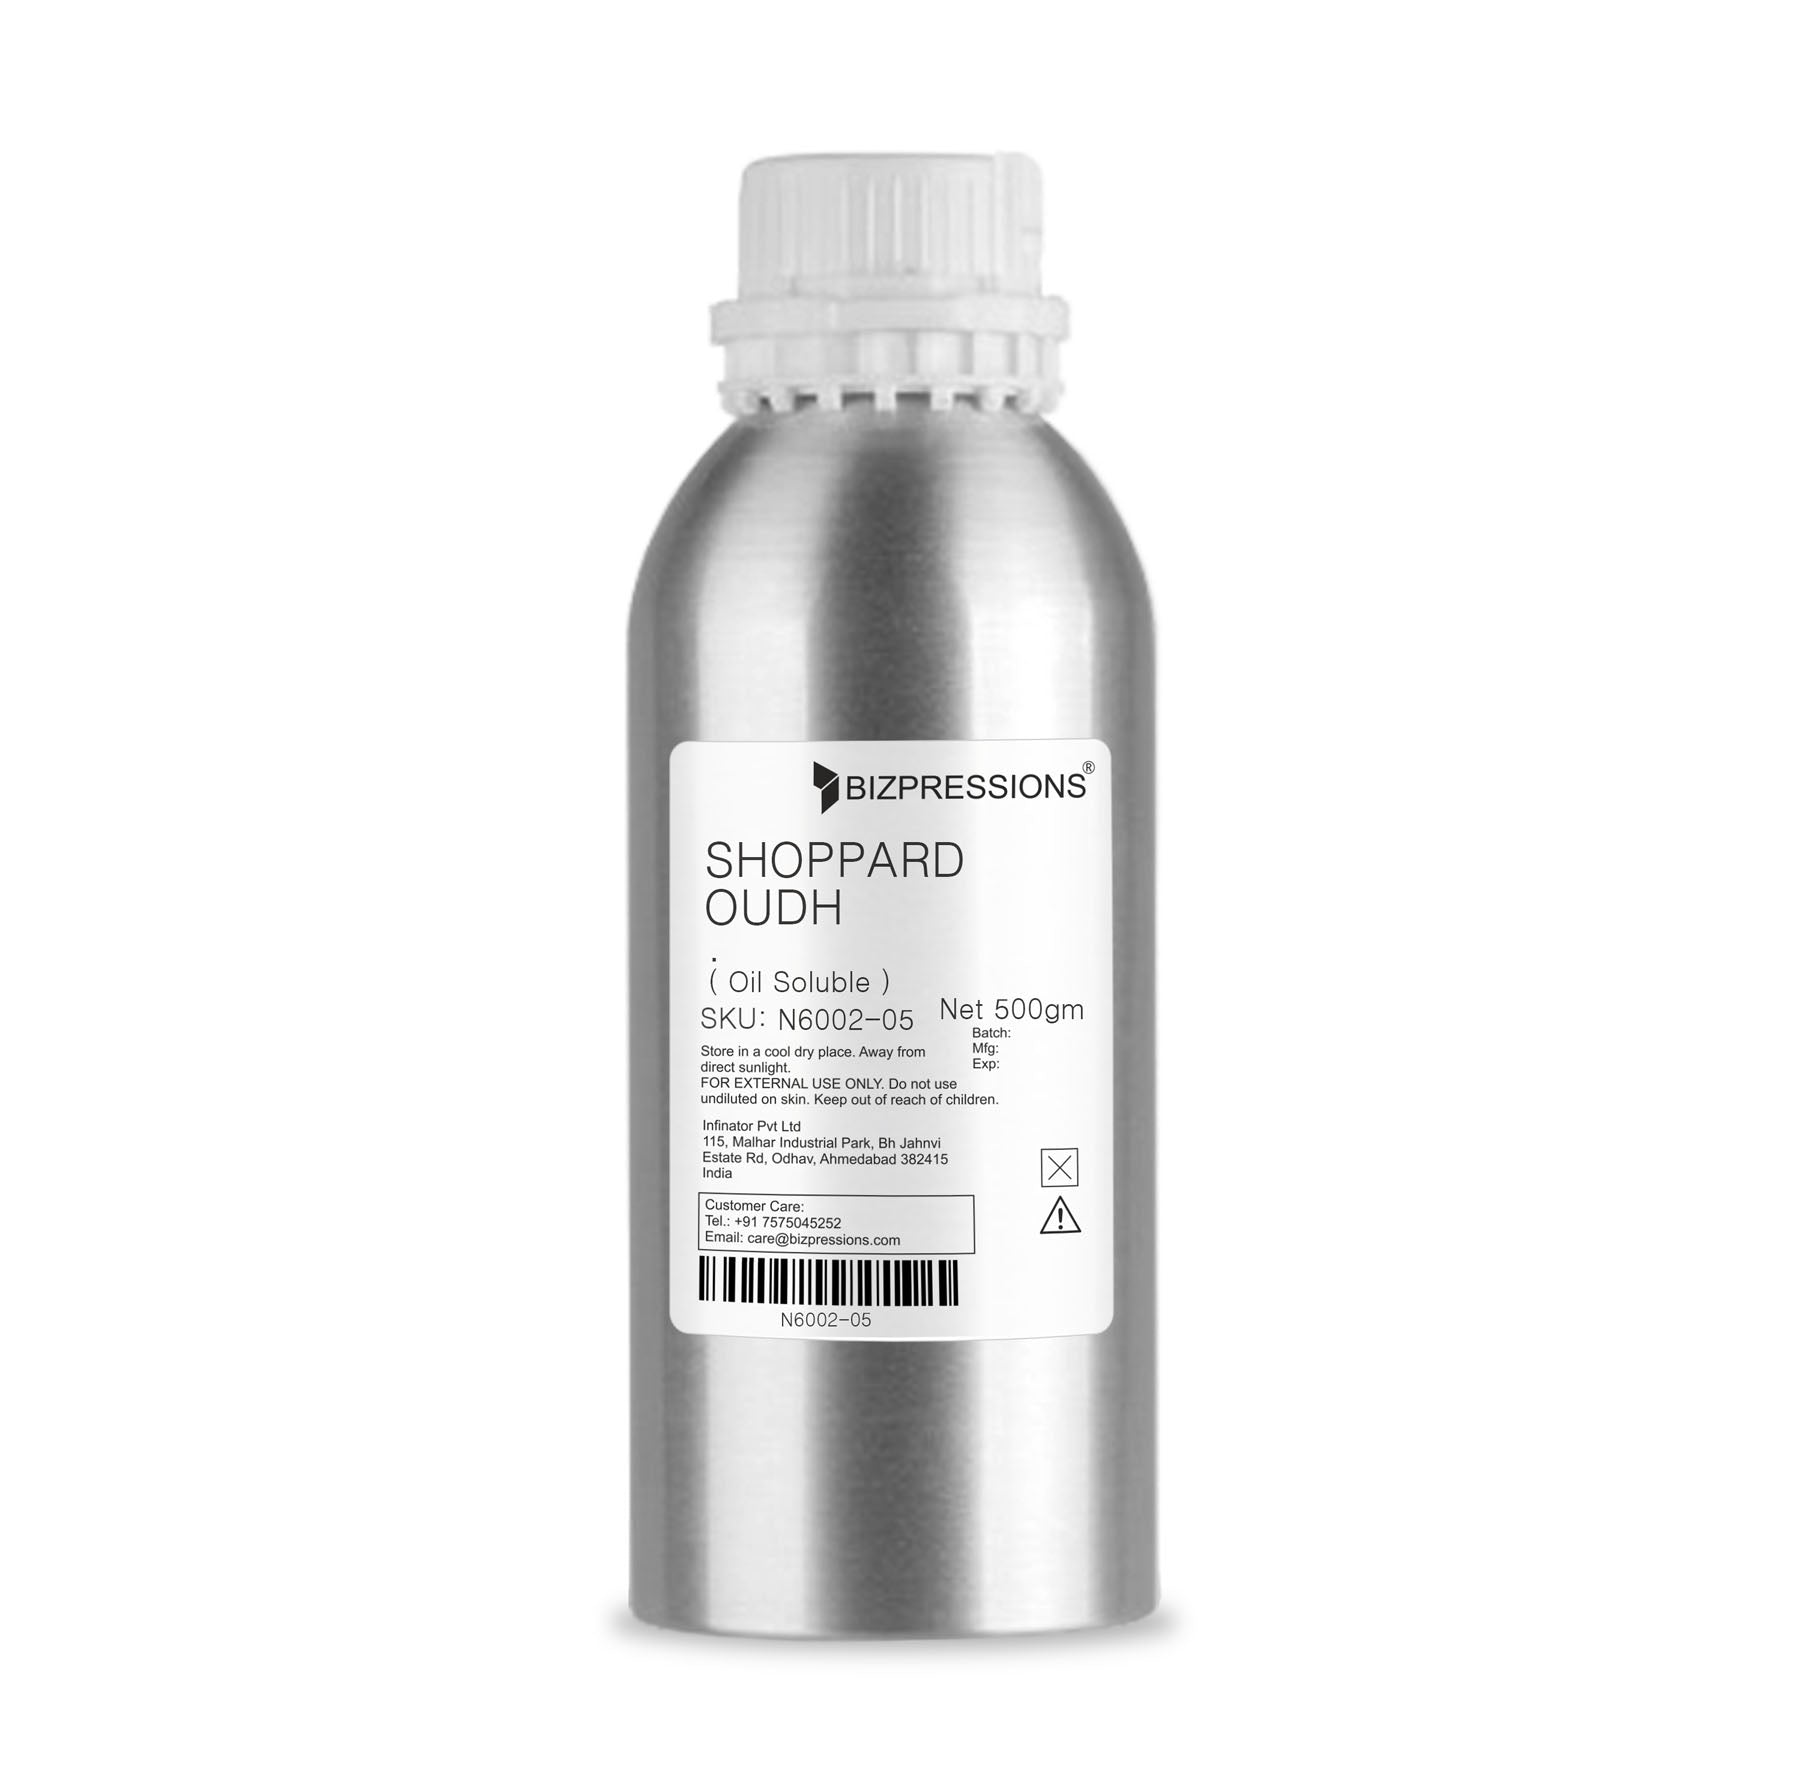 SHOPPARD OUDH - Fragrance ( Oil Soluble ) - 500 gm